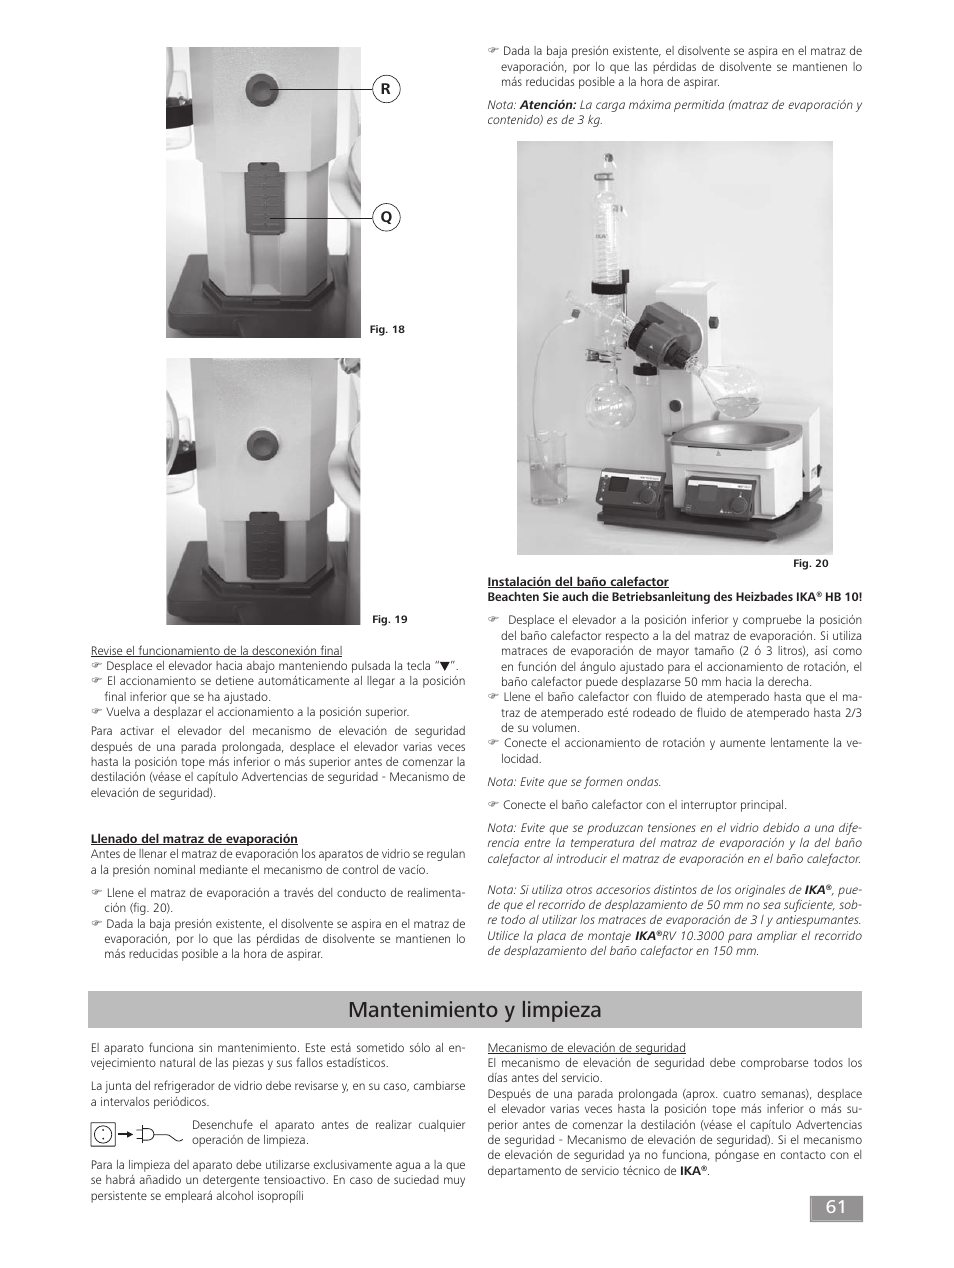 Mantenimiento y limpieza | IKA RV 10 digital FLEX User Manual | Page 61 / 84